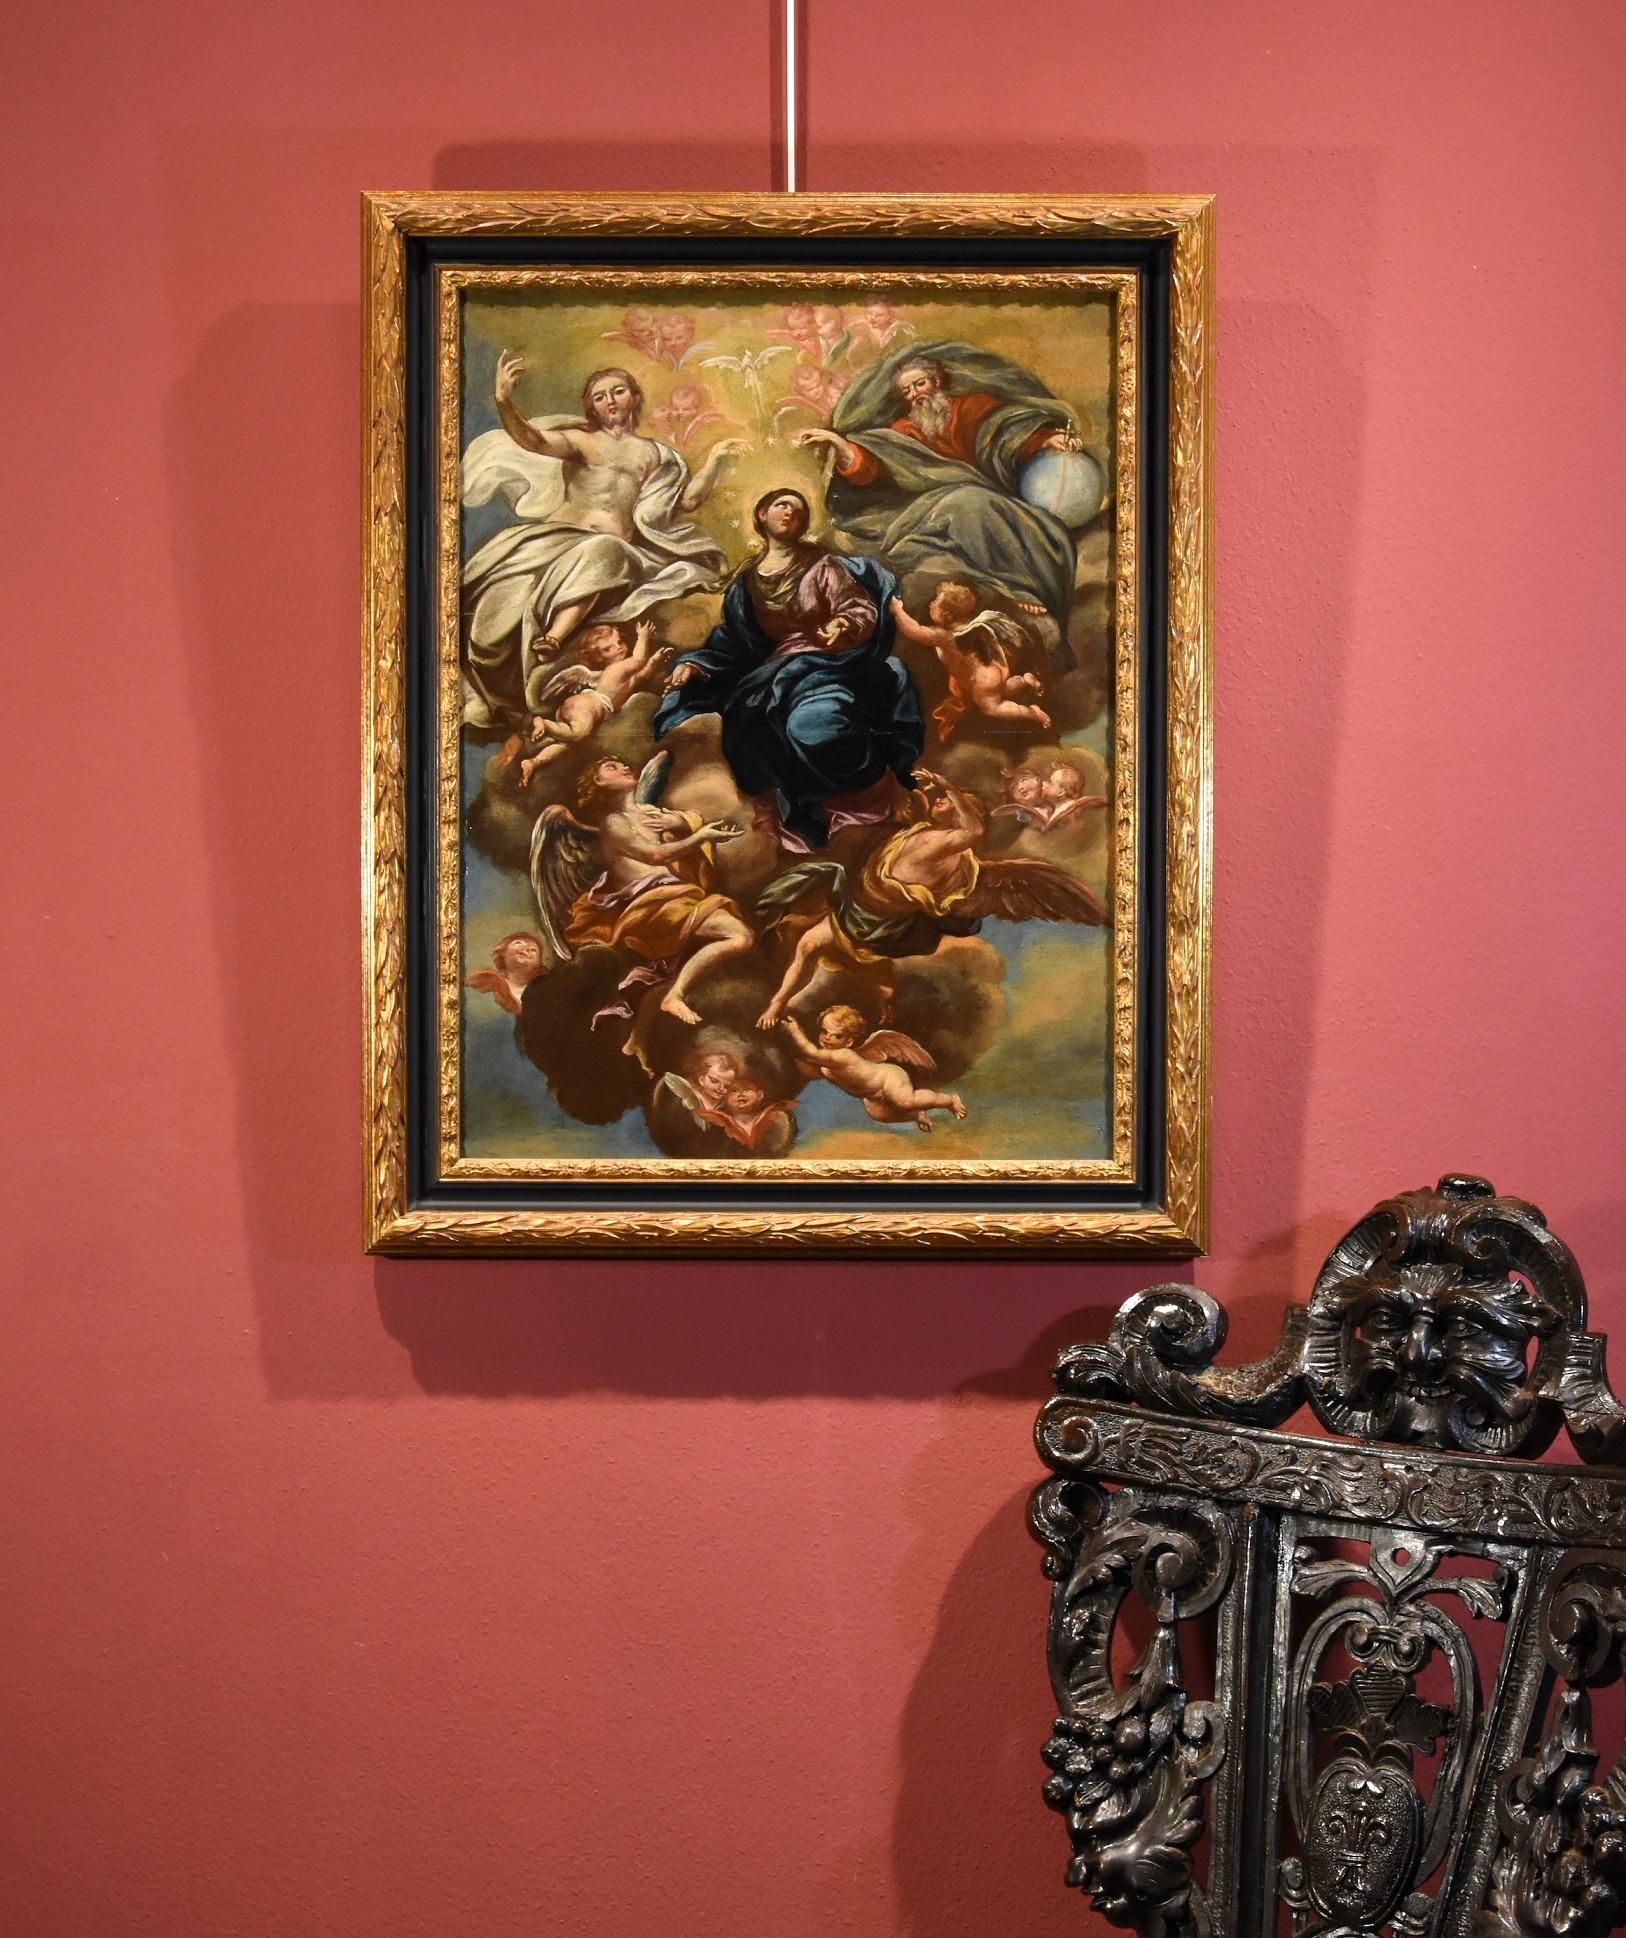 Virgin De Caro Paint Oil on camvas Old master 18th Century Religious Italian Art 7